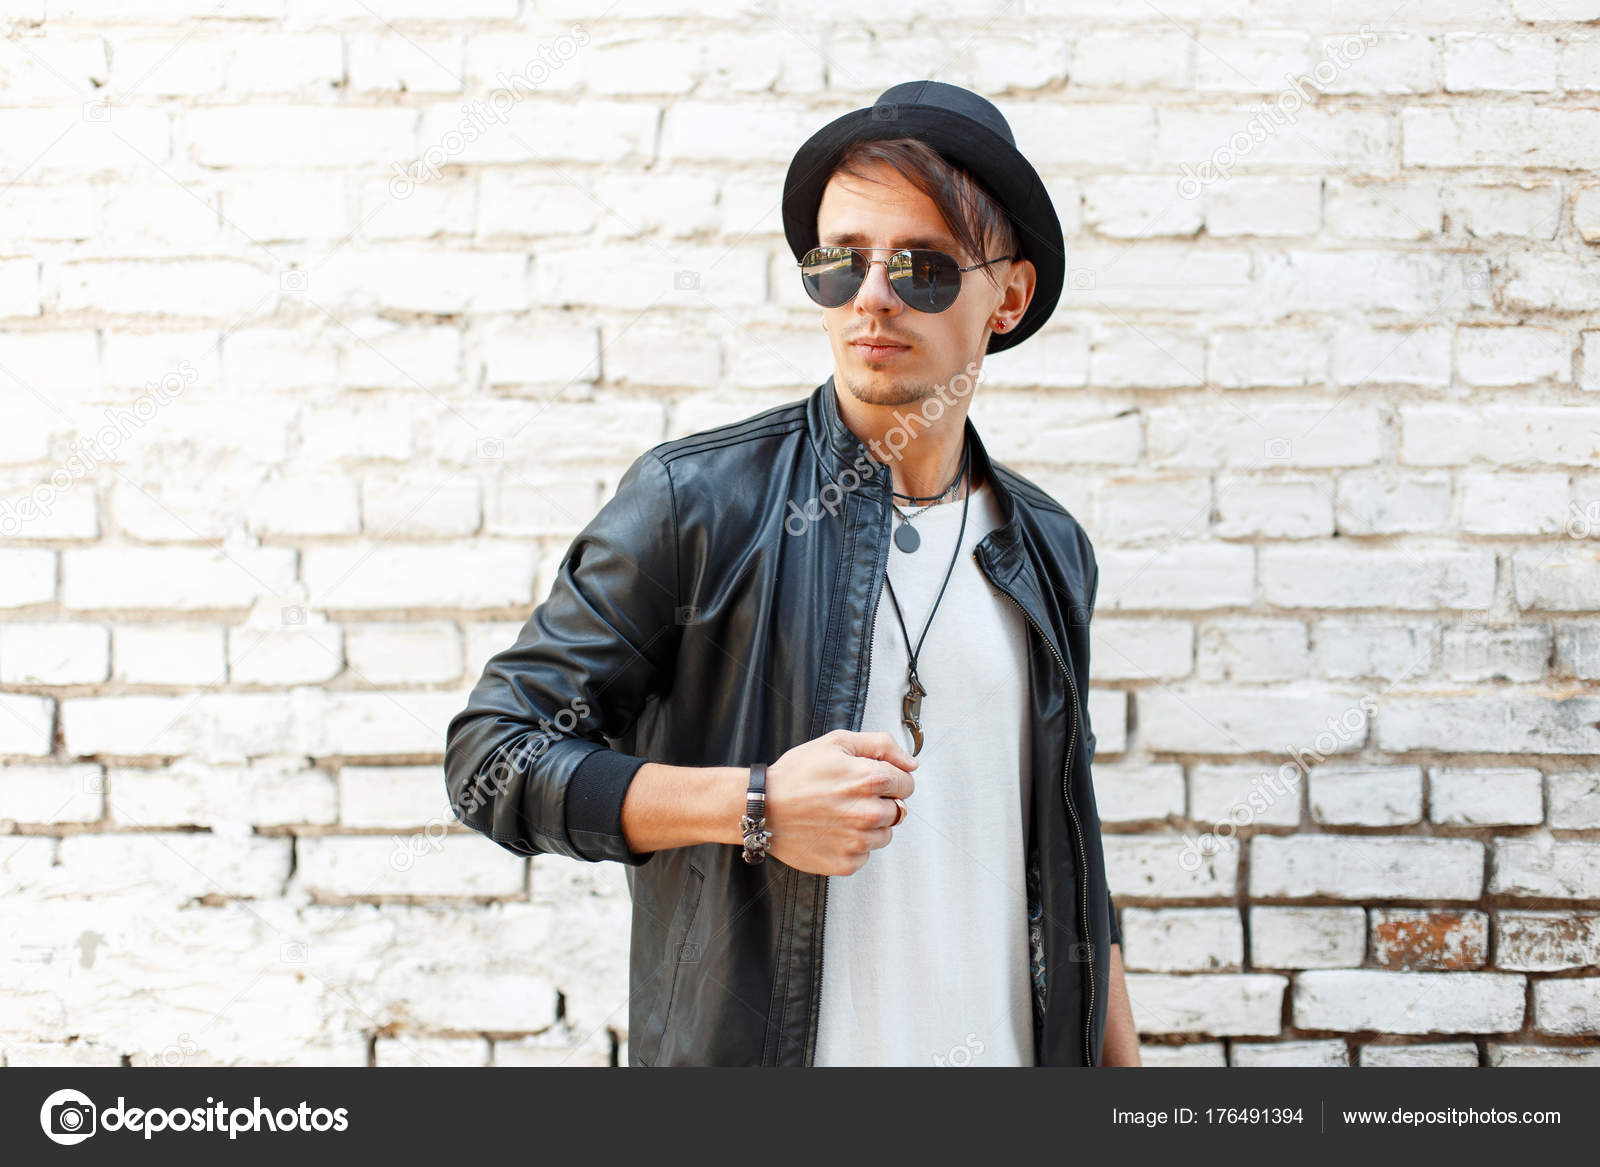 Stilfuld flot mand med solbriller og en sort hat i en læderjakke nær vintage Stock-foto © alonesdj #176491394